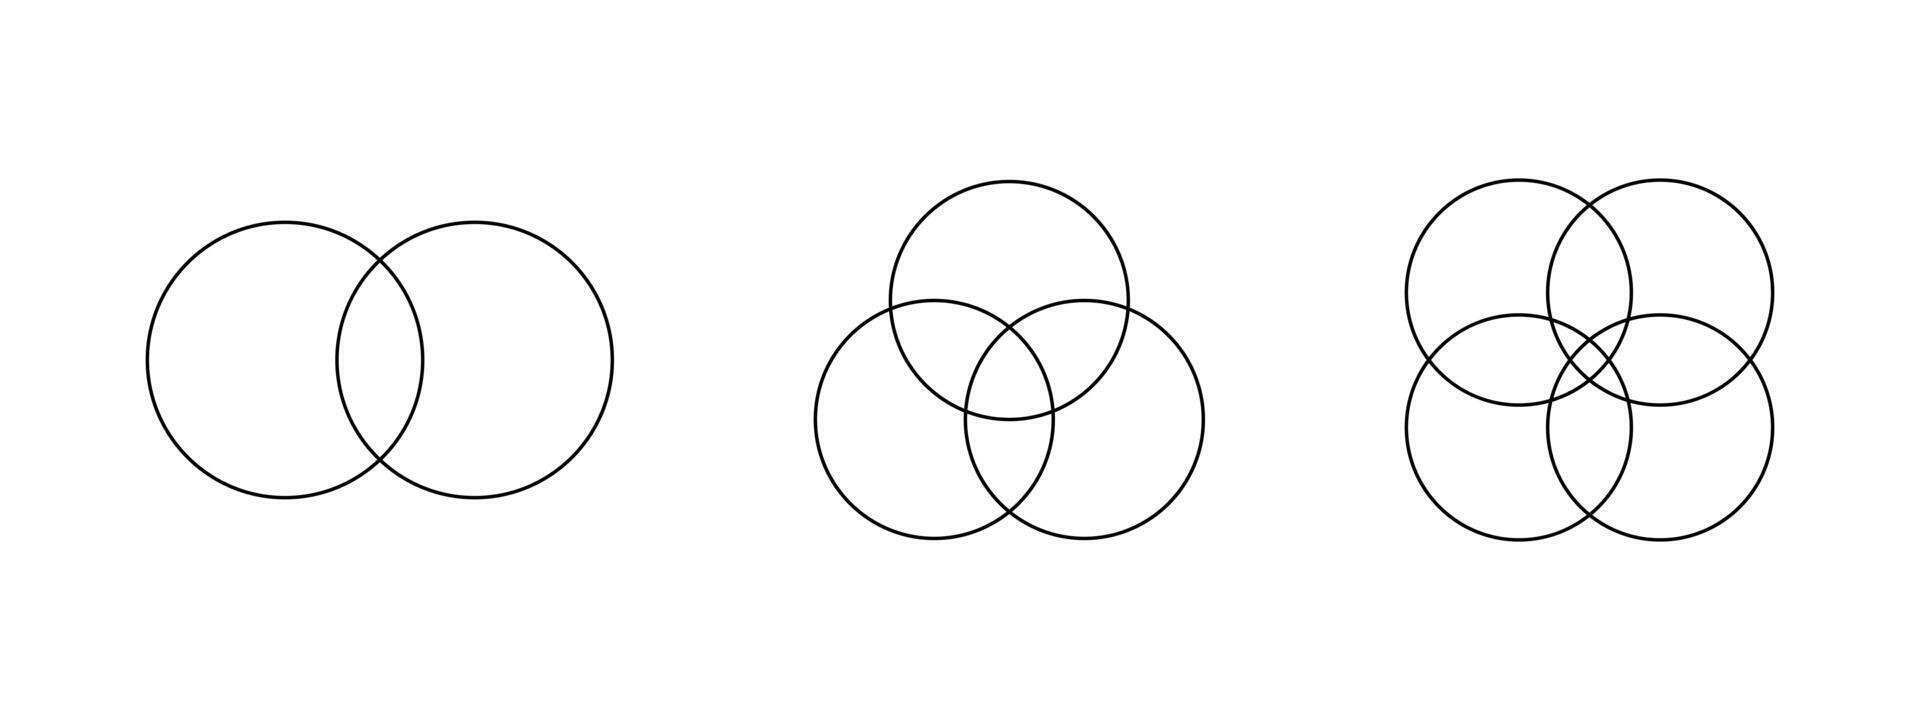 conjunto de contorno venn diagramas con 2, 3, 4 4 superpuesto círculos plantillas para Finanzas diagrama, estadística cuadro, presentación, analítica esquema, infografía disposición. vector